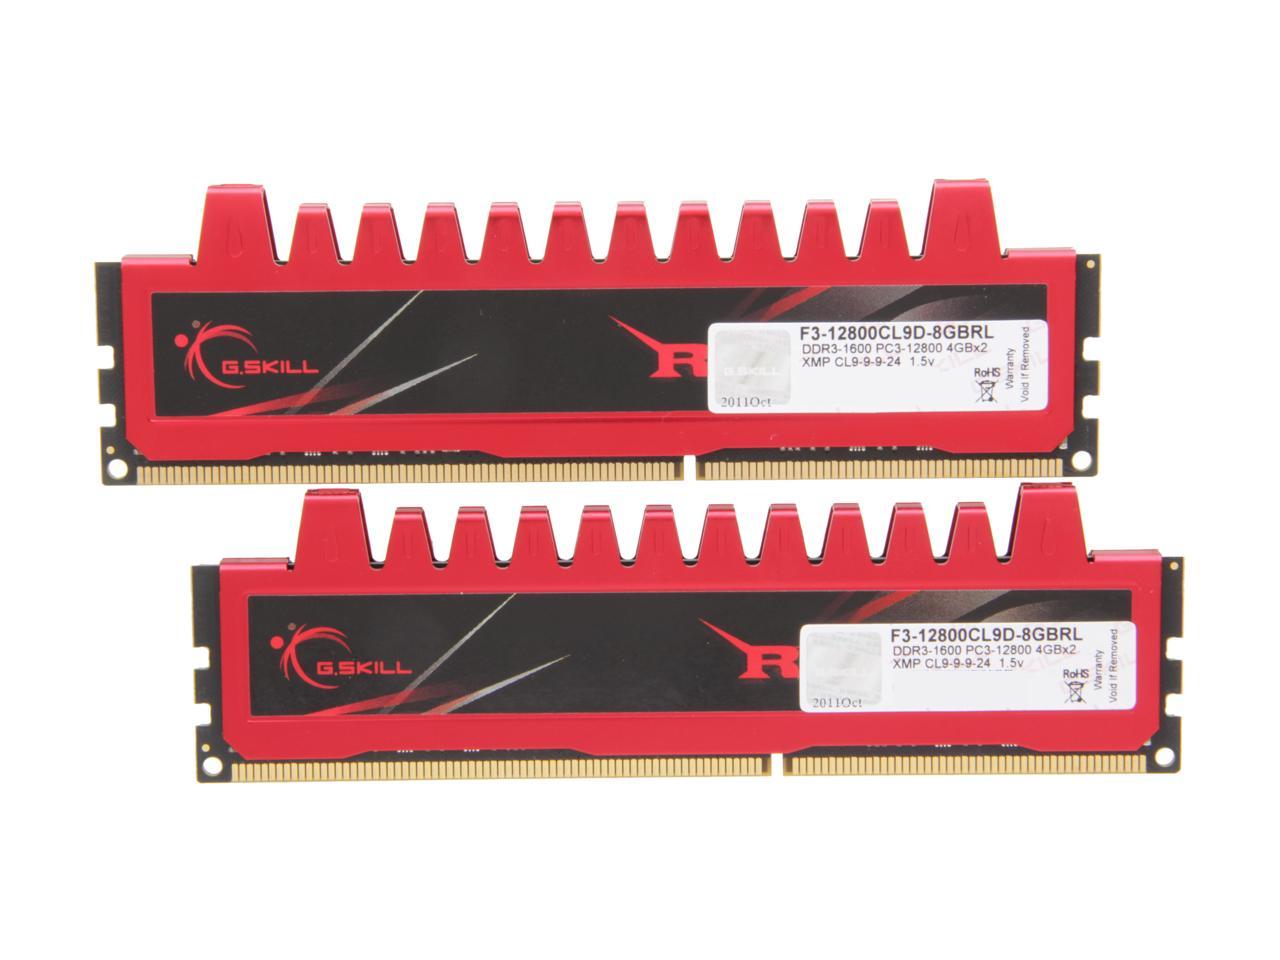 G.SKILL Ripjaws Series 8GB 240-Pin SDRAM DDR3 1600 Memory - Newegg.com